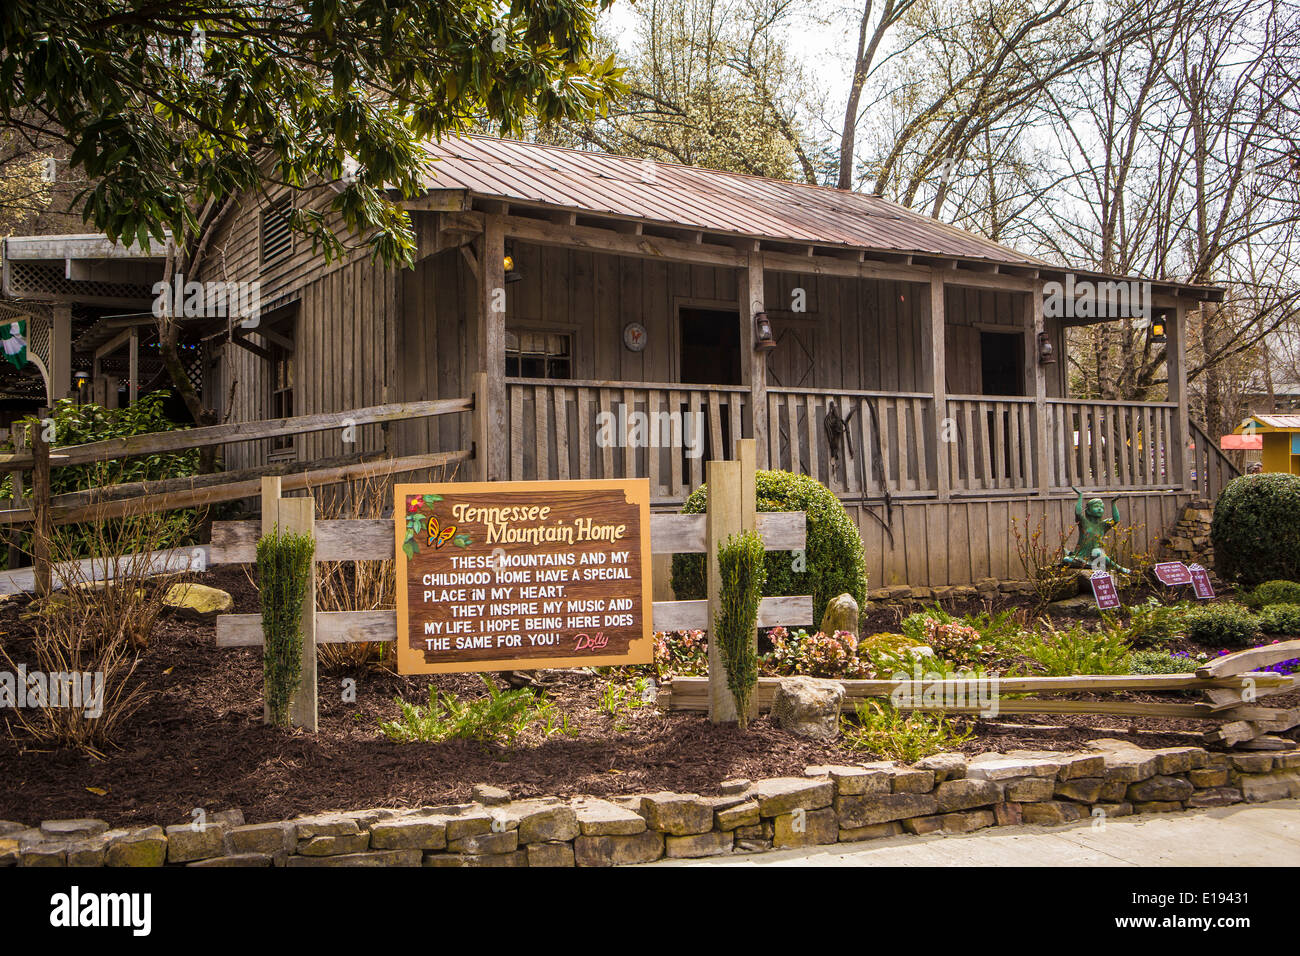 Tennessee Mountain Home, eine Nachbildung von Dolly Parton Kindheit Haus abgebildet ist im Themenpark Dollywood in Pigeon Forge Stockfoto